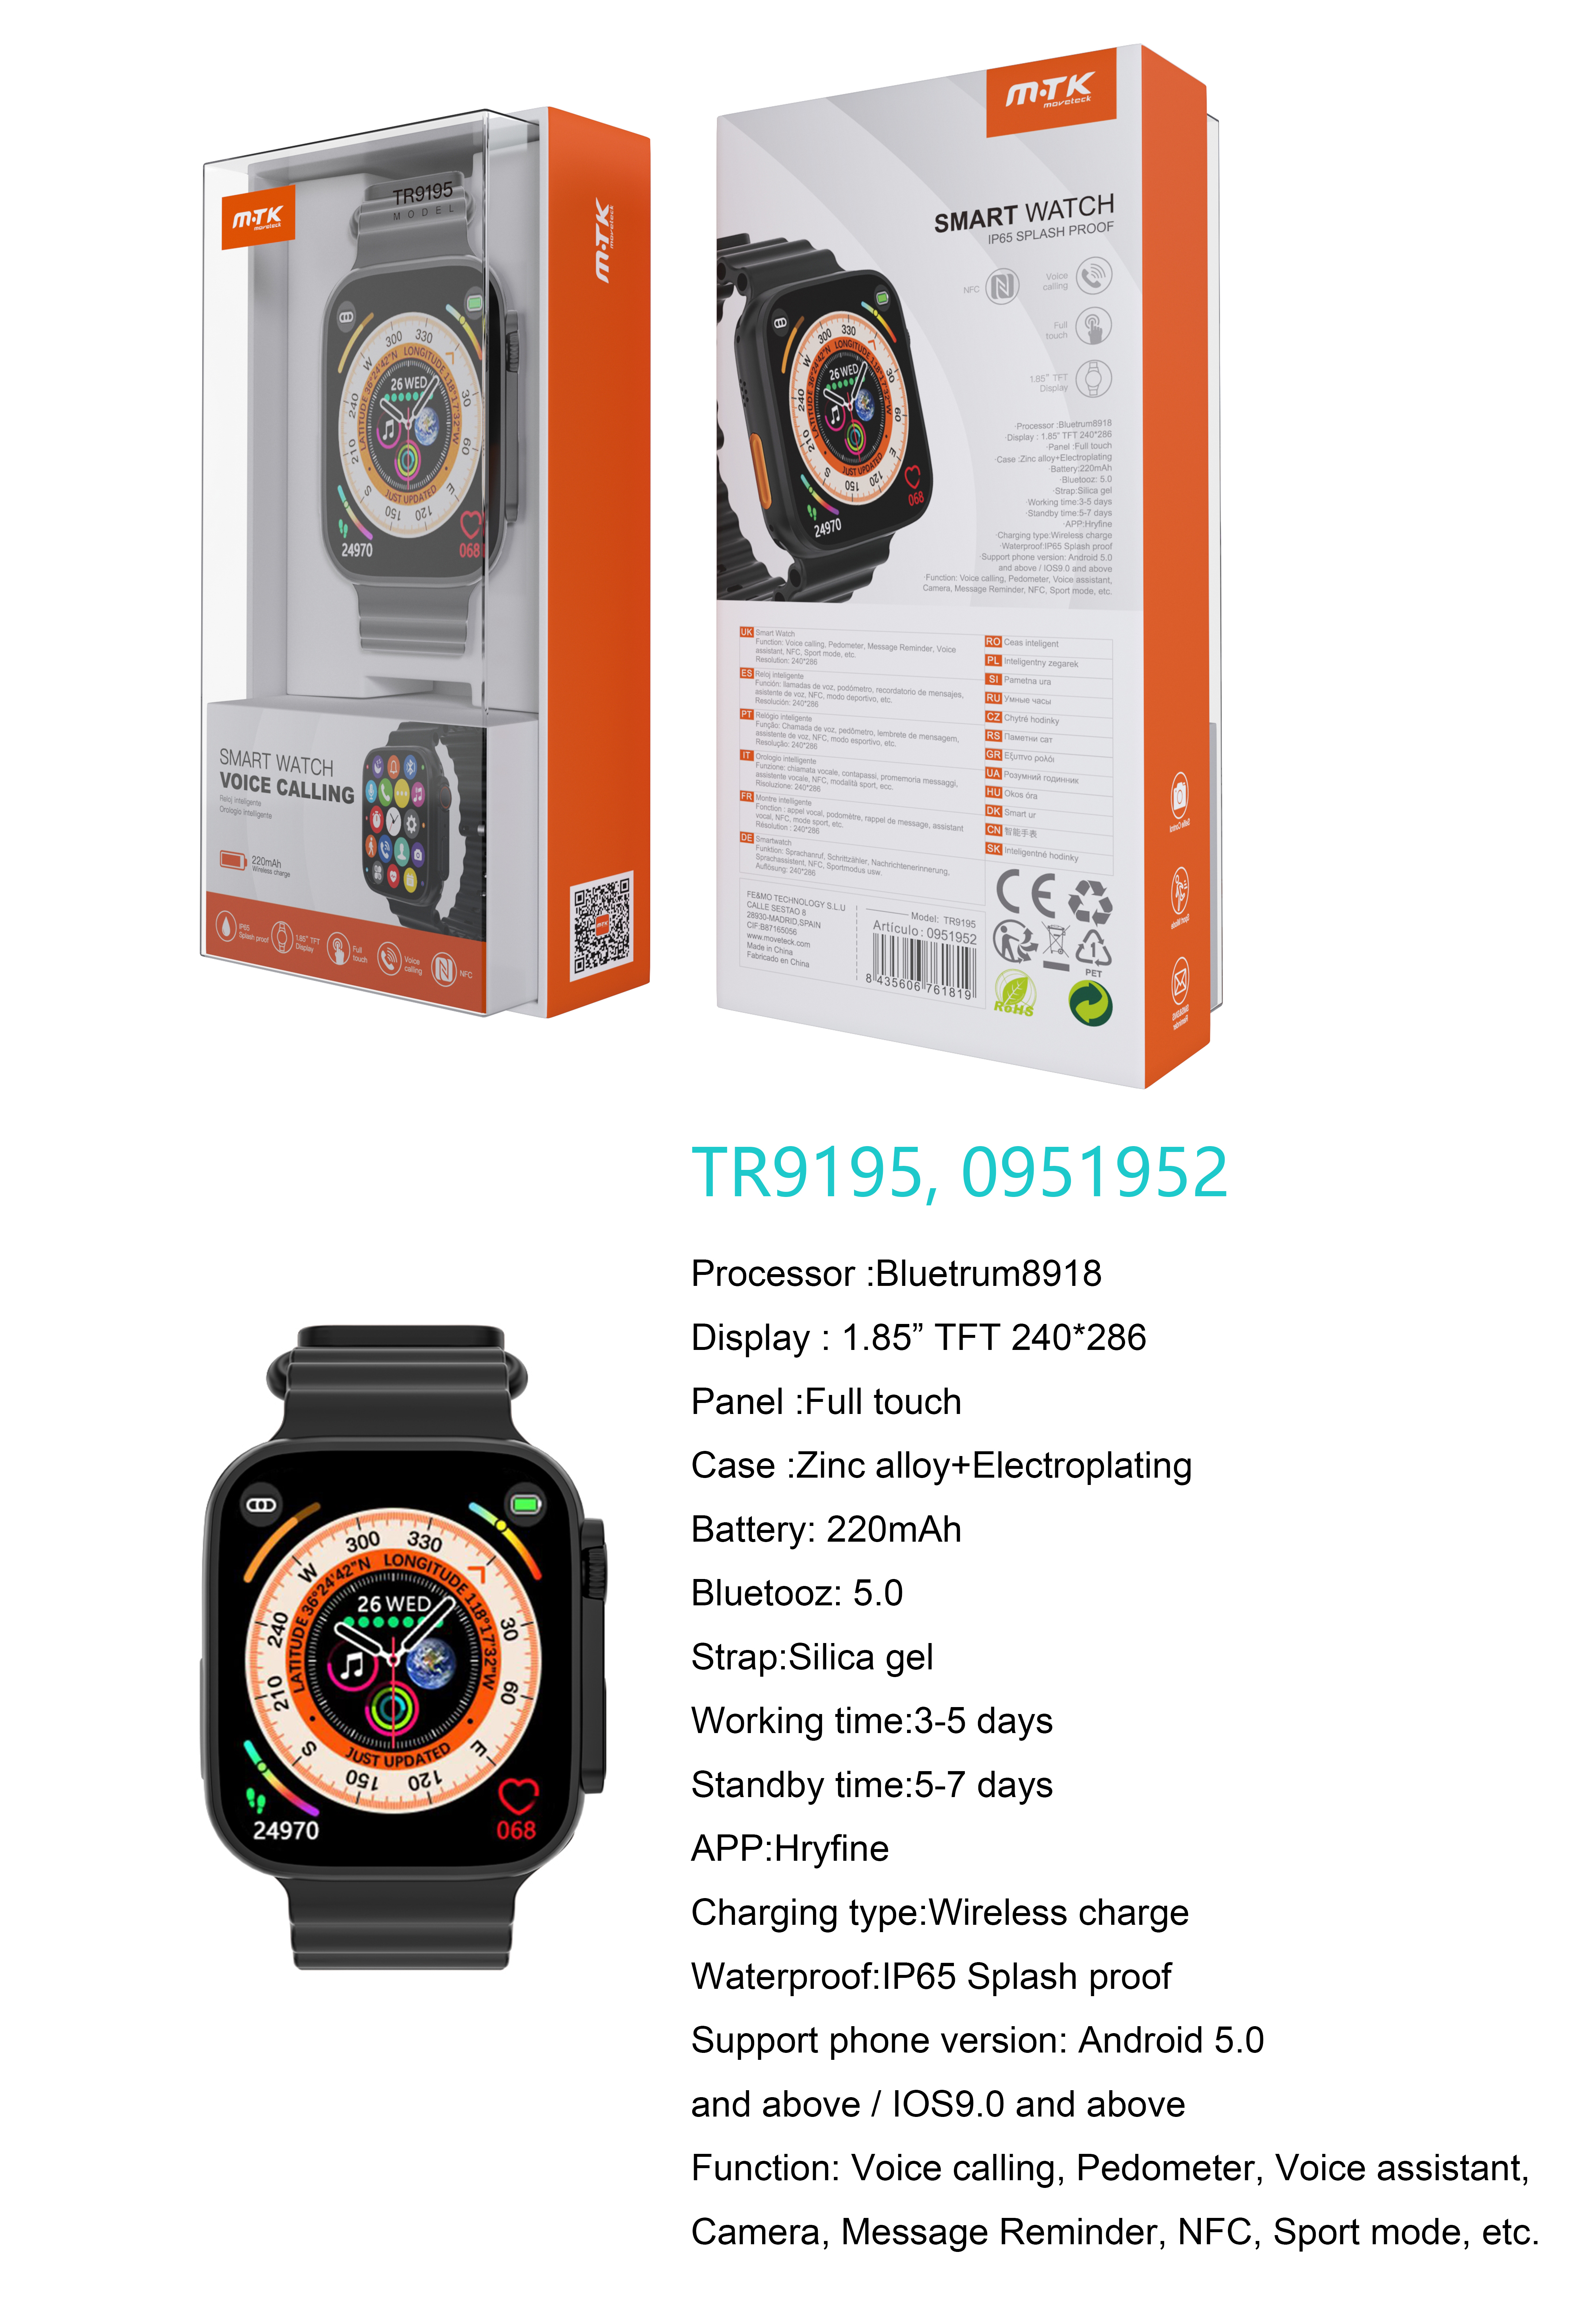 TR9195 NE Reloj Inteligente con bluetooth 5.0, Pantalla tactil de 1.85 pulgadas, Soporta NFC, llemadas, Asistente de Voz,Impermeable IP65, Bateria 220